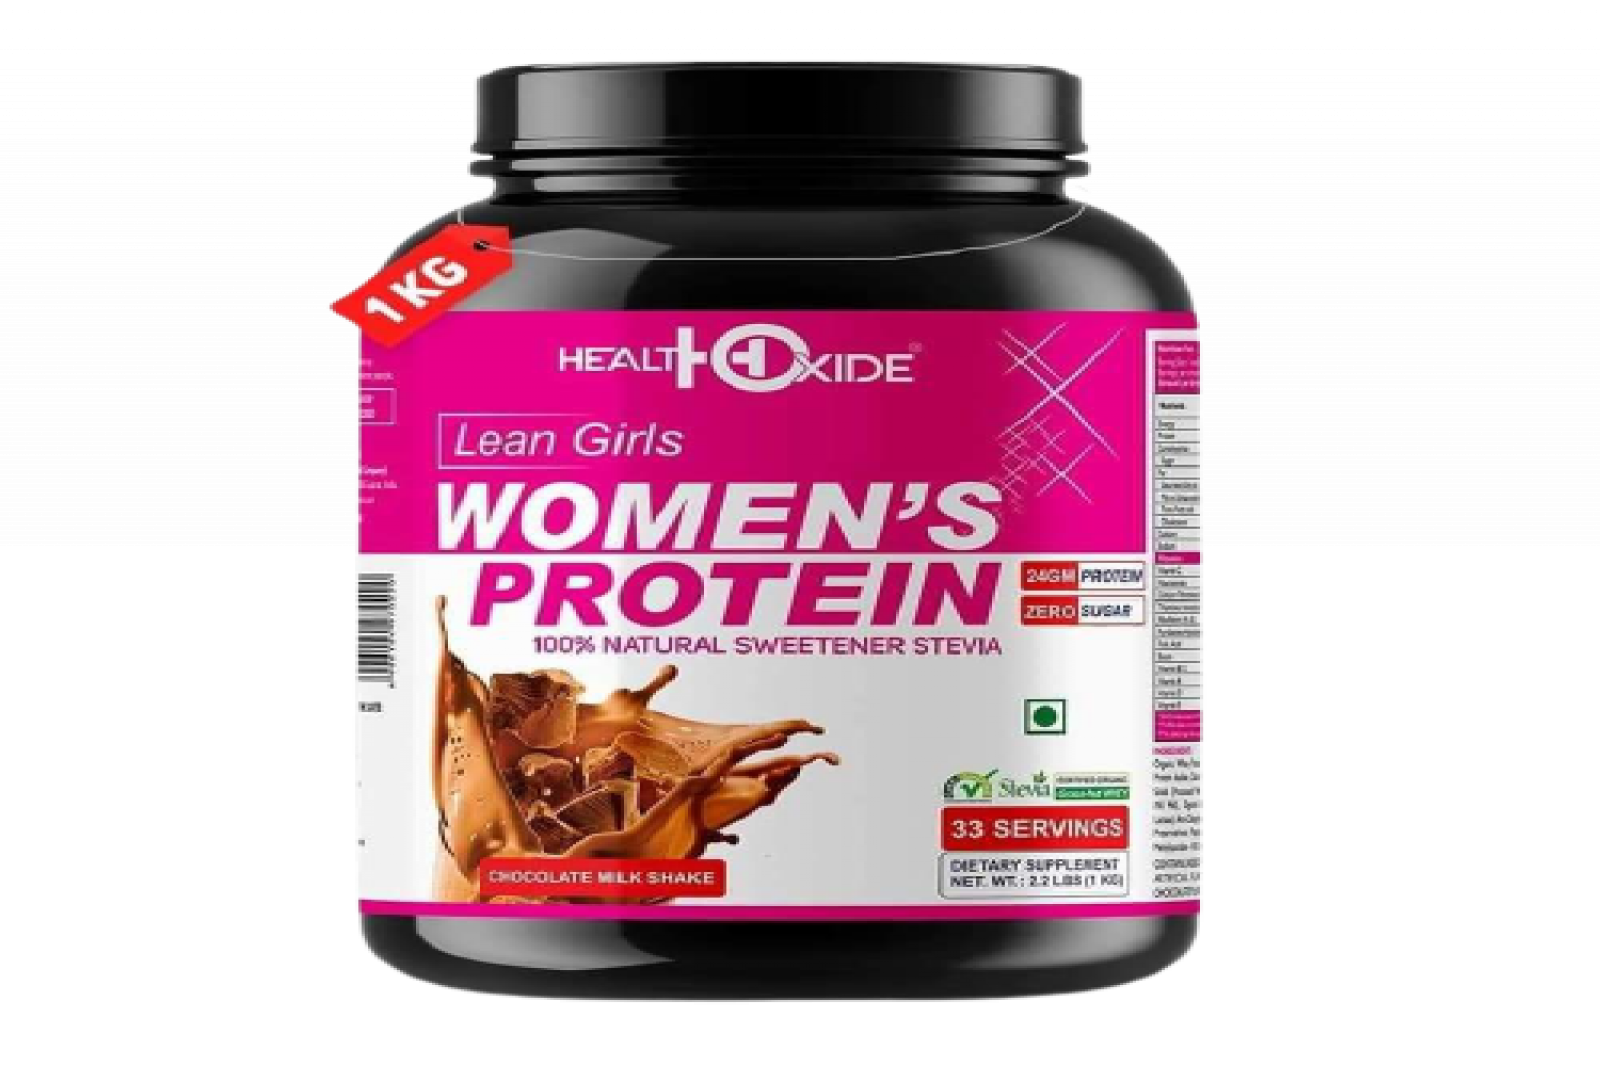 Healthoxide Women's Protein Powder